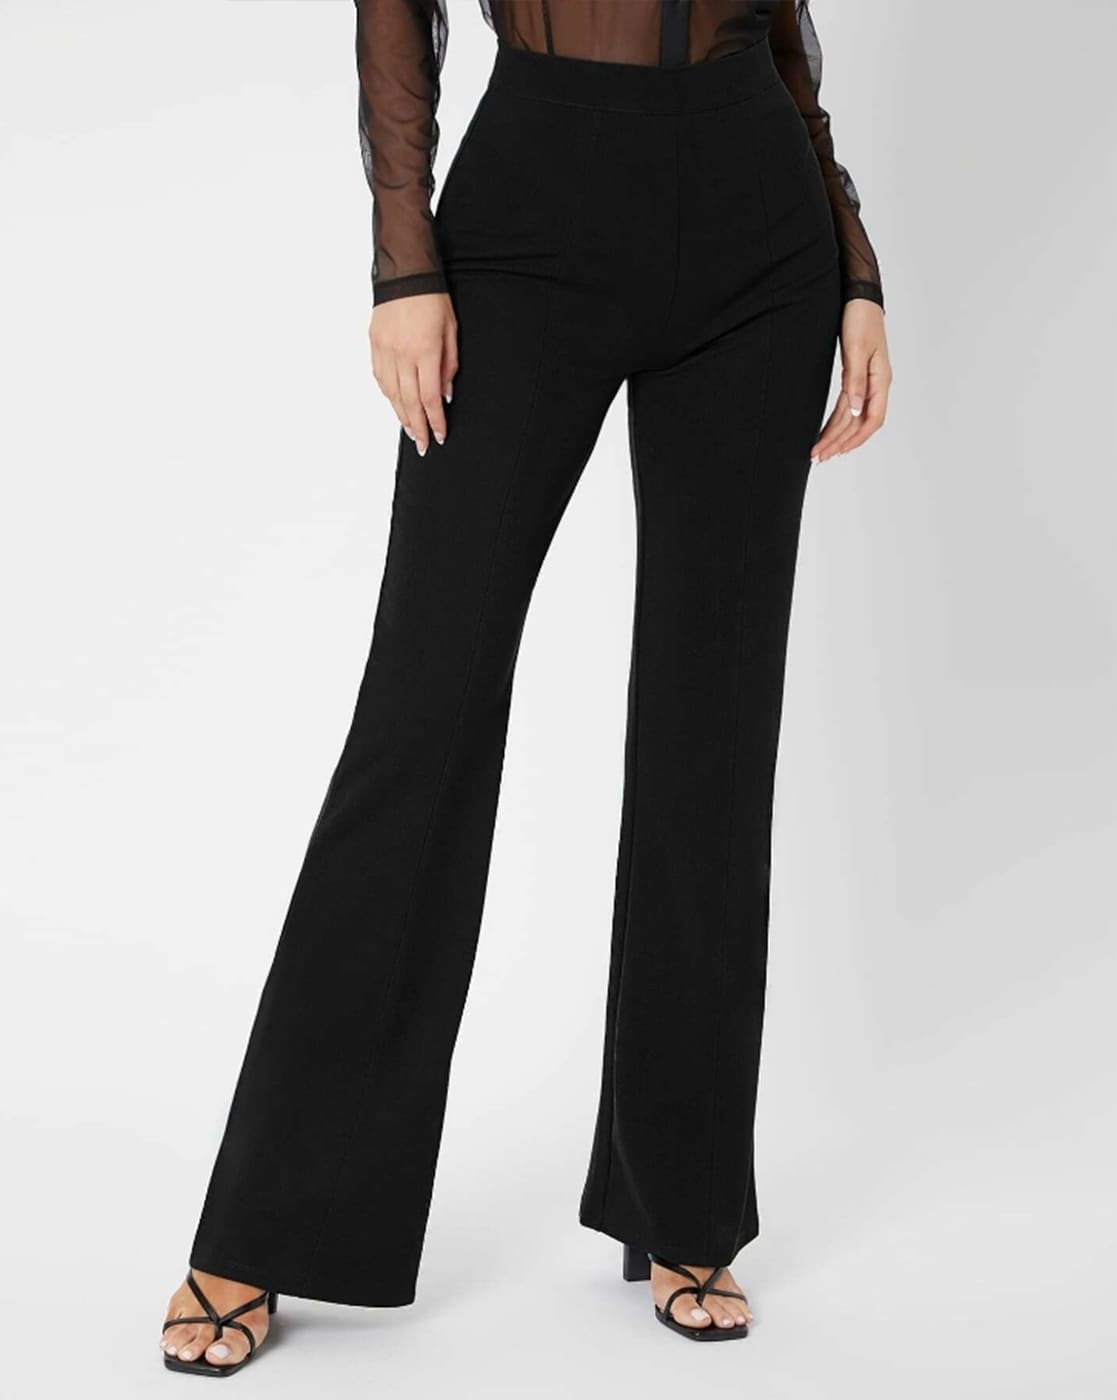 Buy Black Trousers  Pants for Women by VISIT WEAR Online  Ajiocom